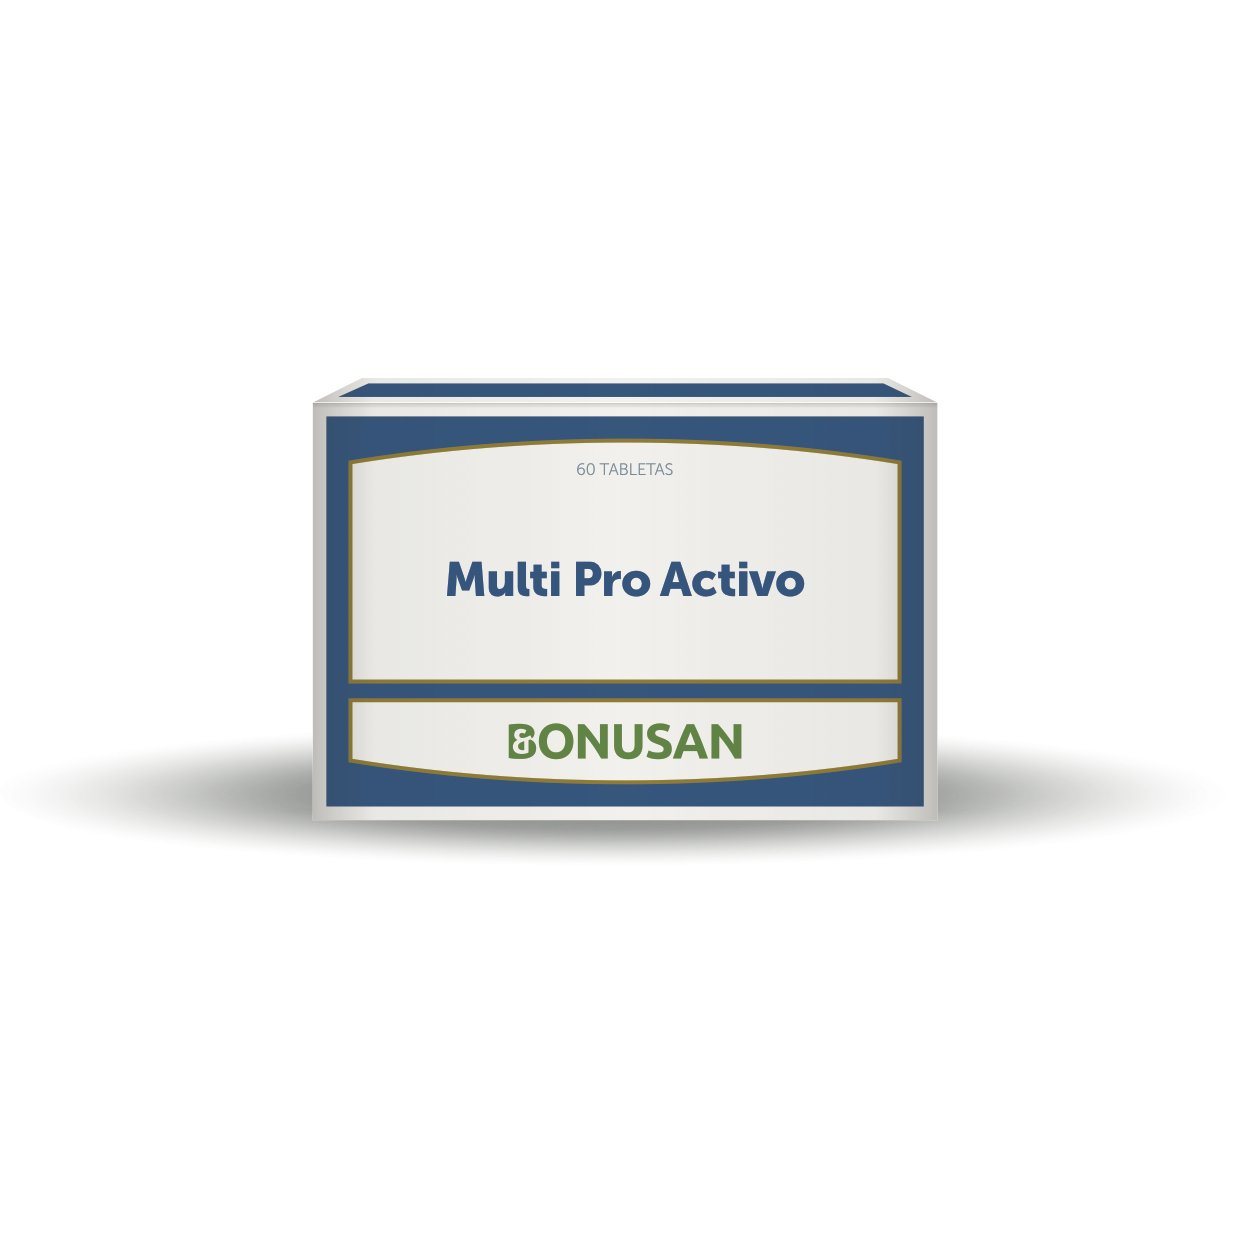 Multi Pro Activo 60 Tabletas | Bonusan - Dietetica Ferrer